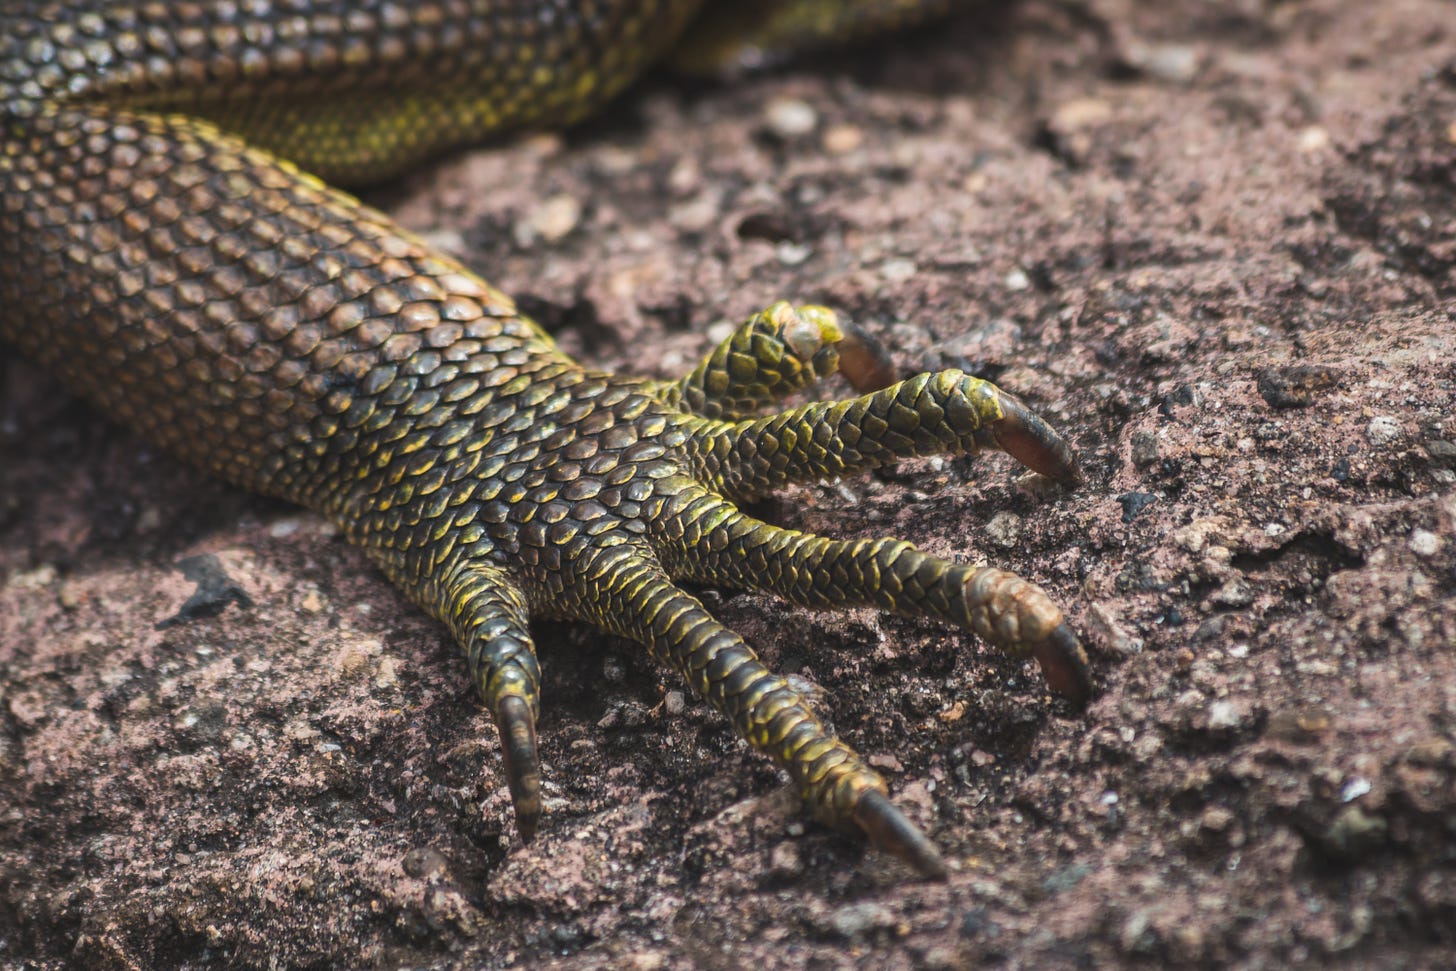 Fotografia. Detalhe da pata de um camaleão sobre a terra seca. As escamas do animal são verde-escuras, e as cinco unhas nas pontas de seus dedos estão cravadas no chão